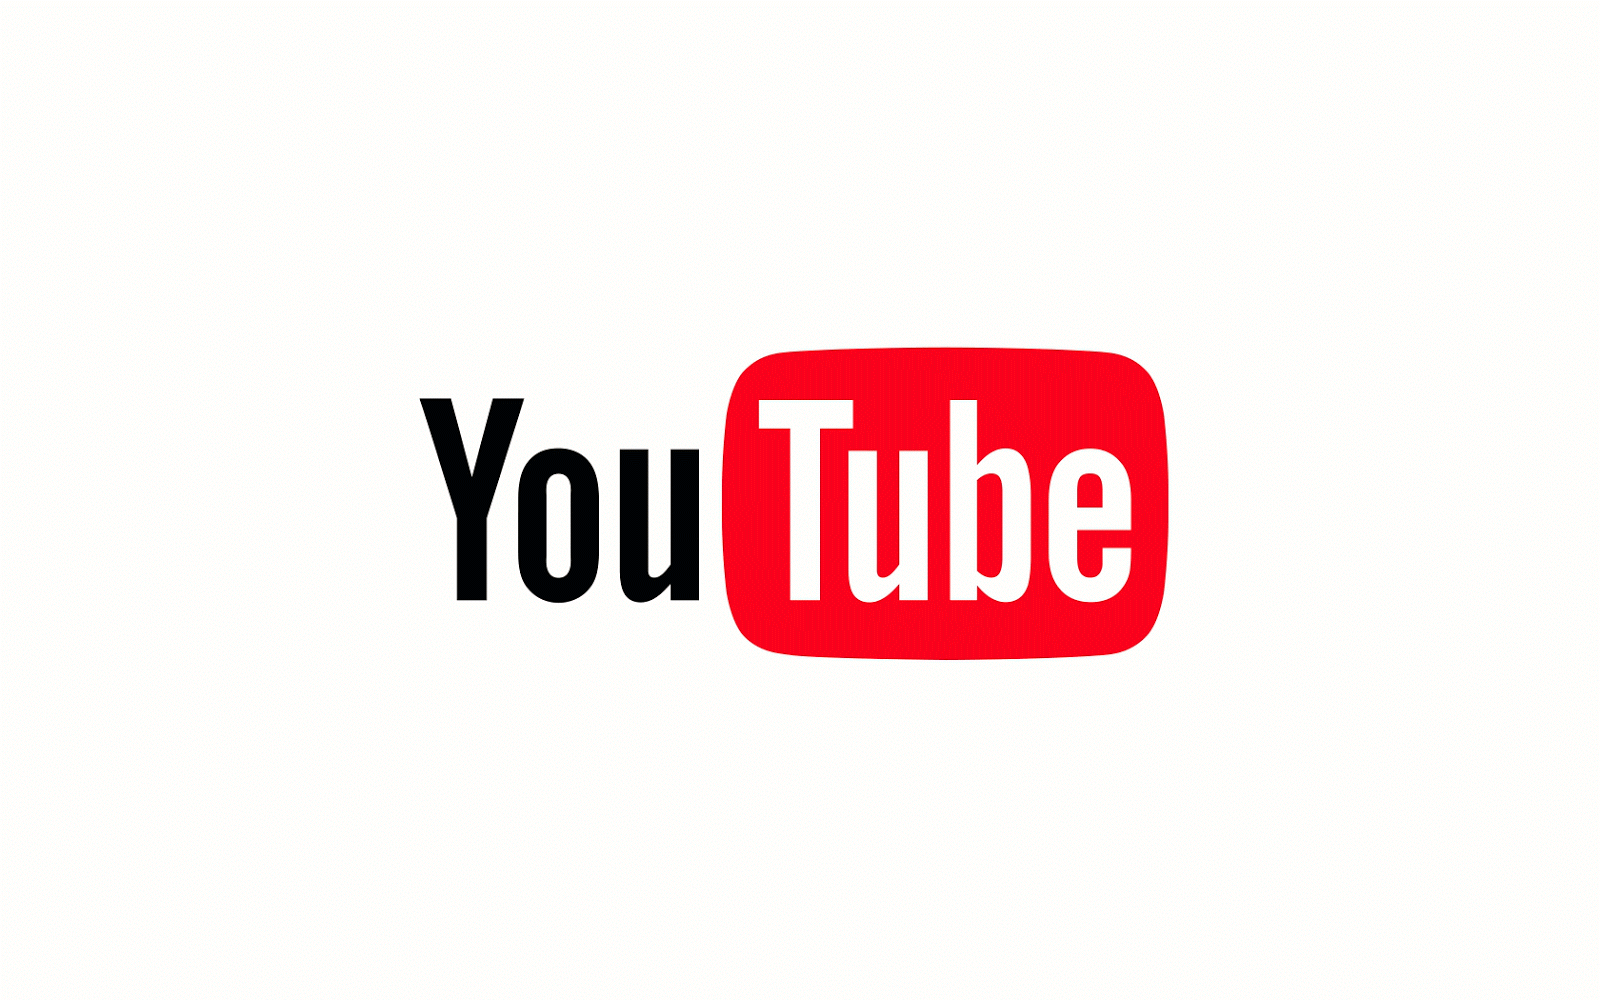 Neues YouTube-Logo: Das sagen Experten › PAGE online